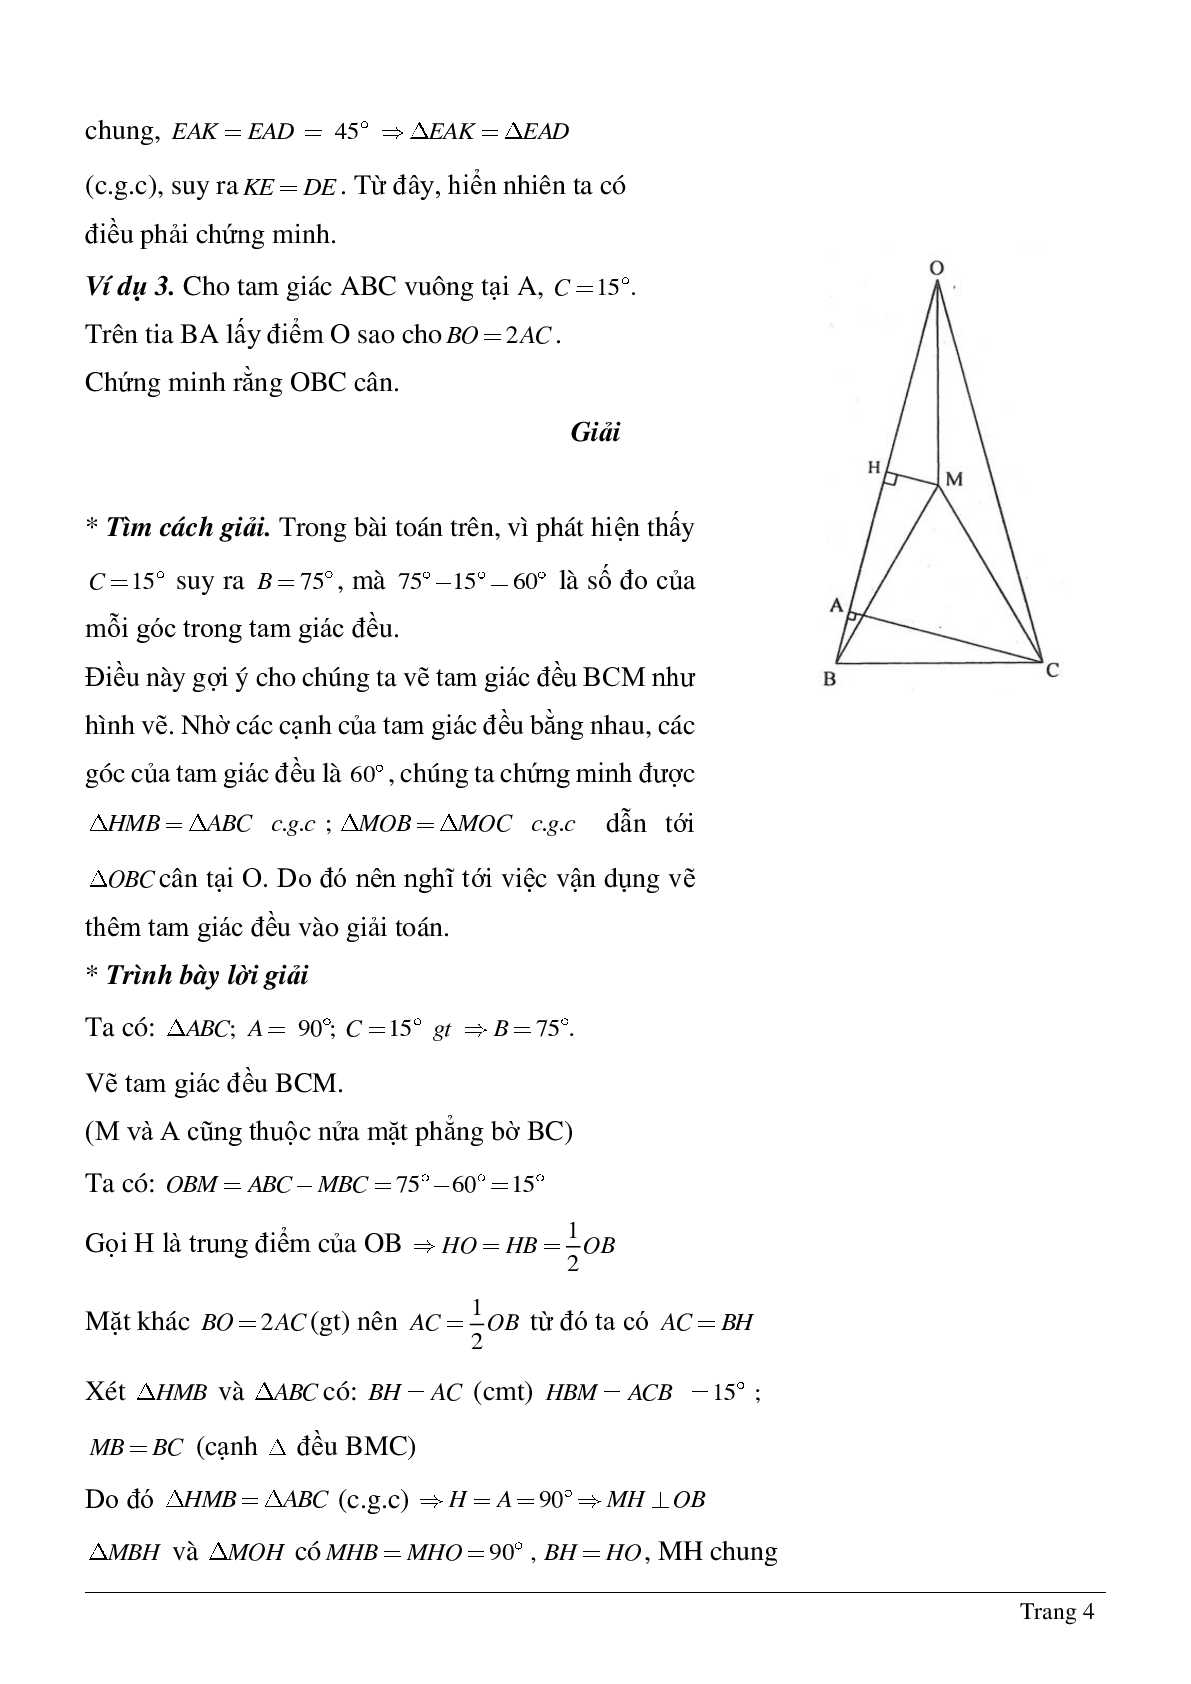 Phương pháp giải về Vẽ hình phụ để giải các bài toán hình học có lời giải (trang 4)